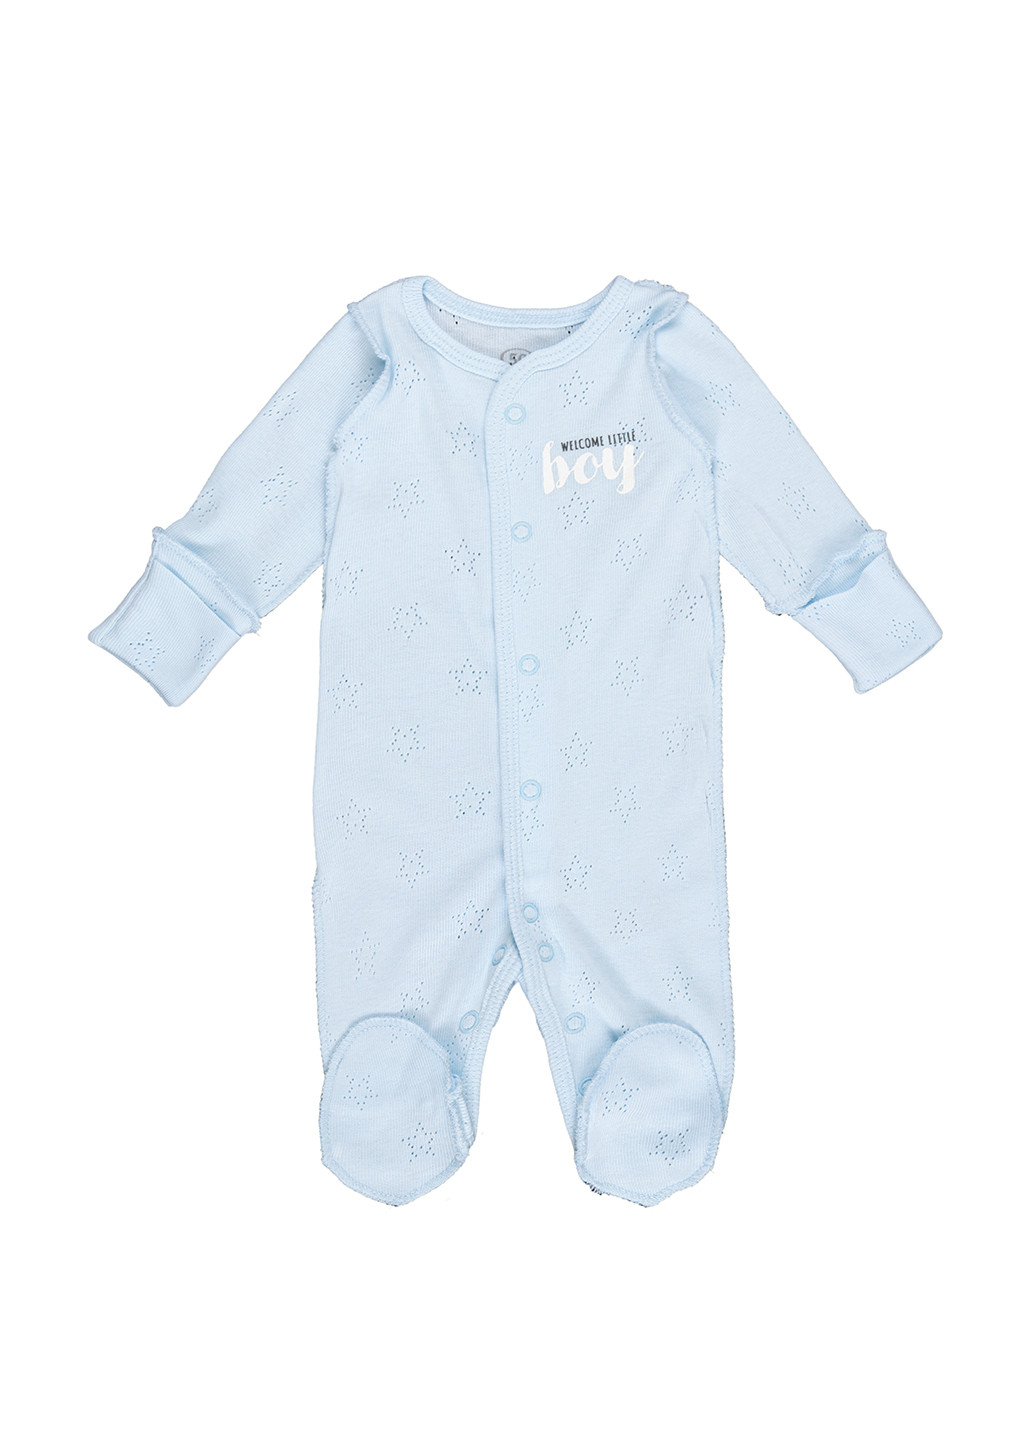 Летний человечек для новорожденных Фламинго Текстиль однотонный голубой домашний хлопок